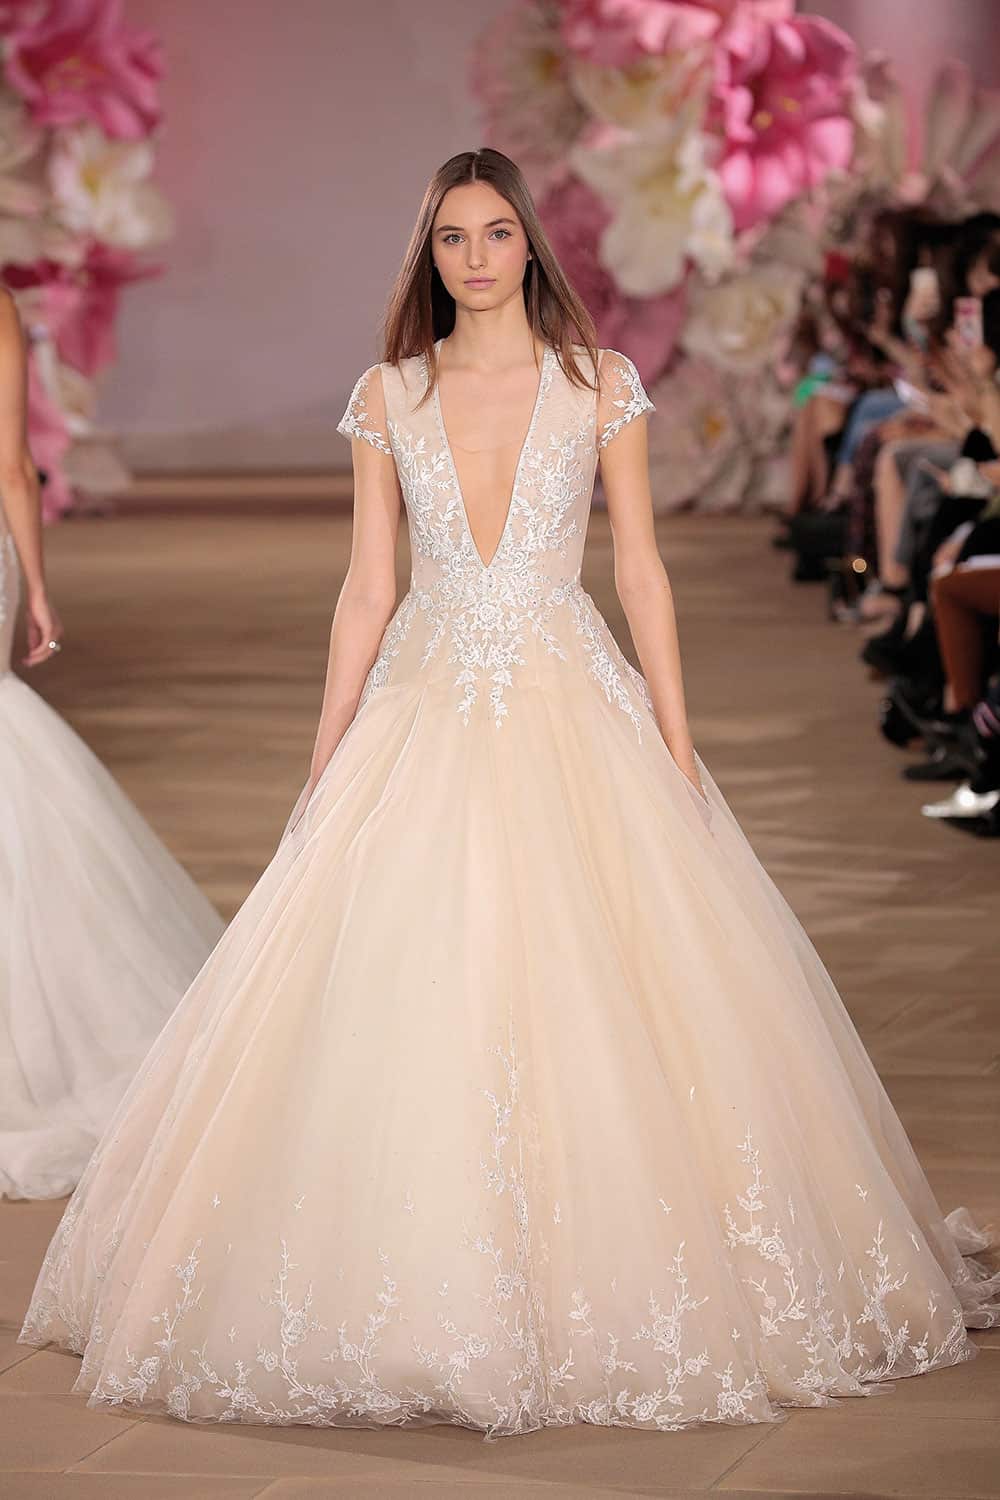 Pink wedding dresses: Plunge neckline blush wedding gown by Ines Di Santo